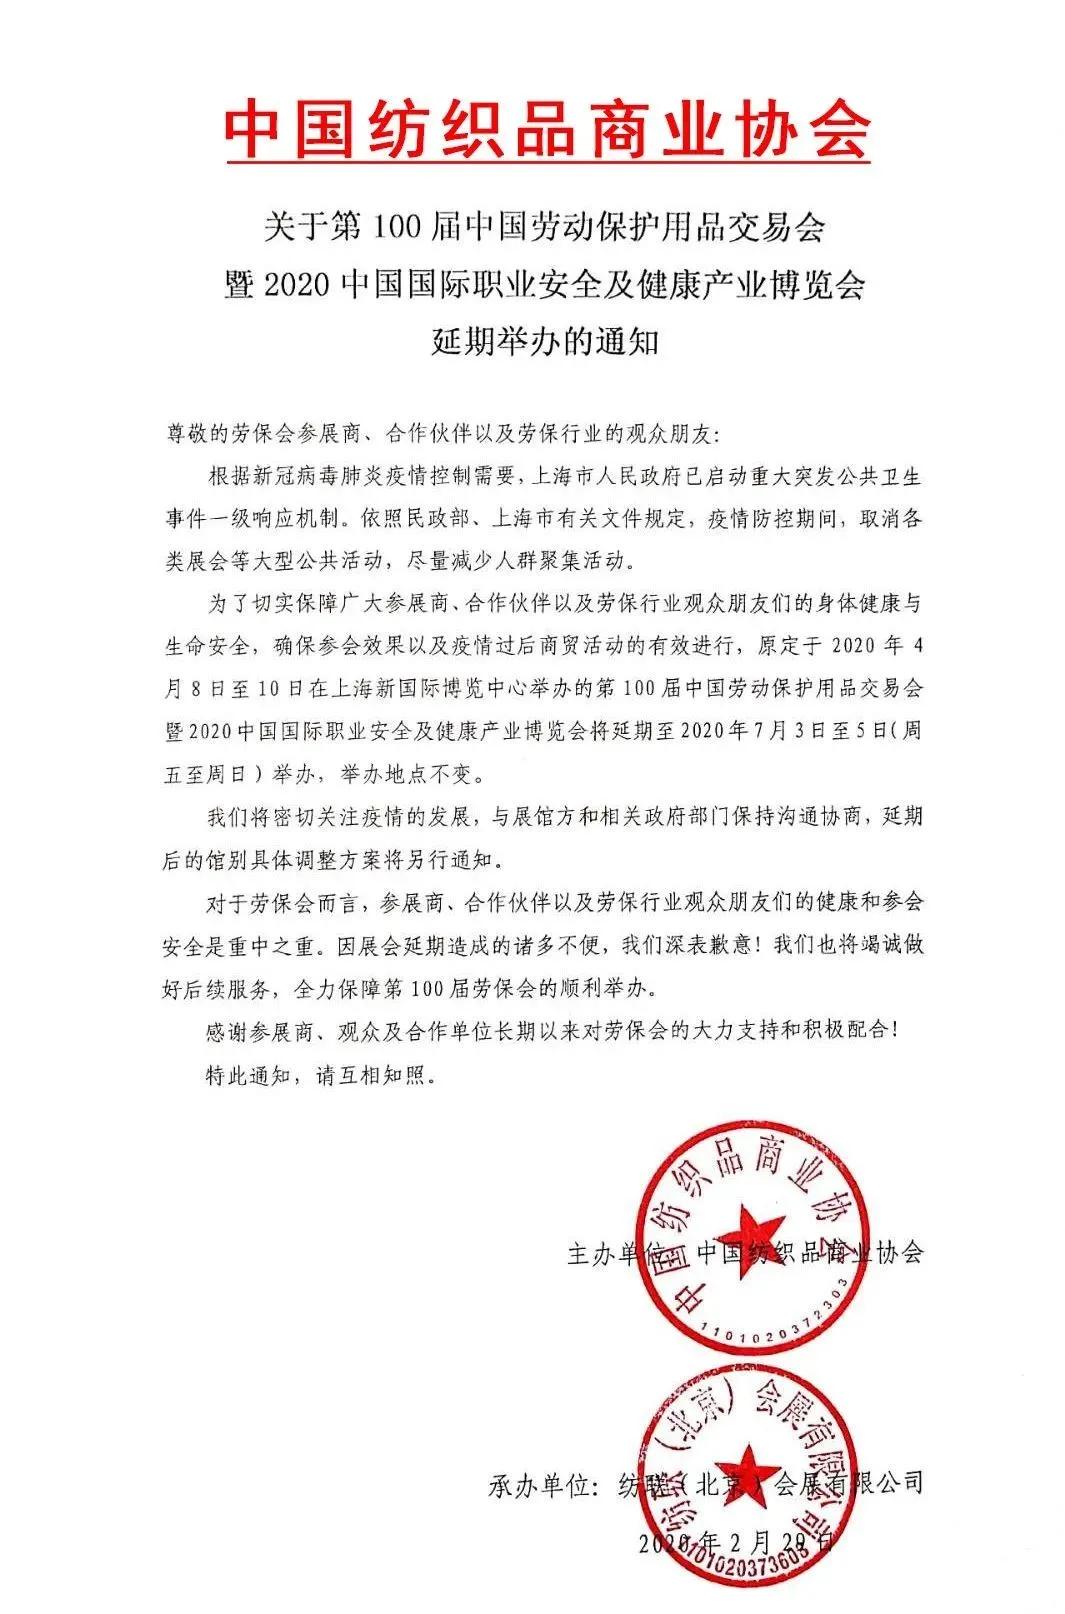 2020上海劳保展延期通知详情